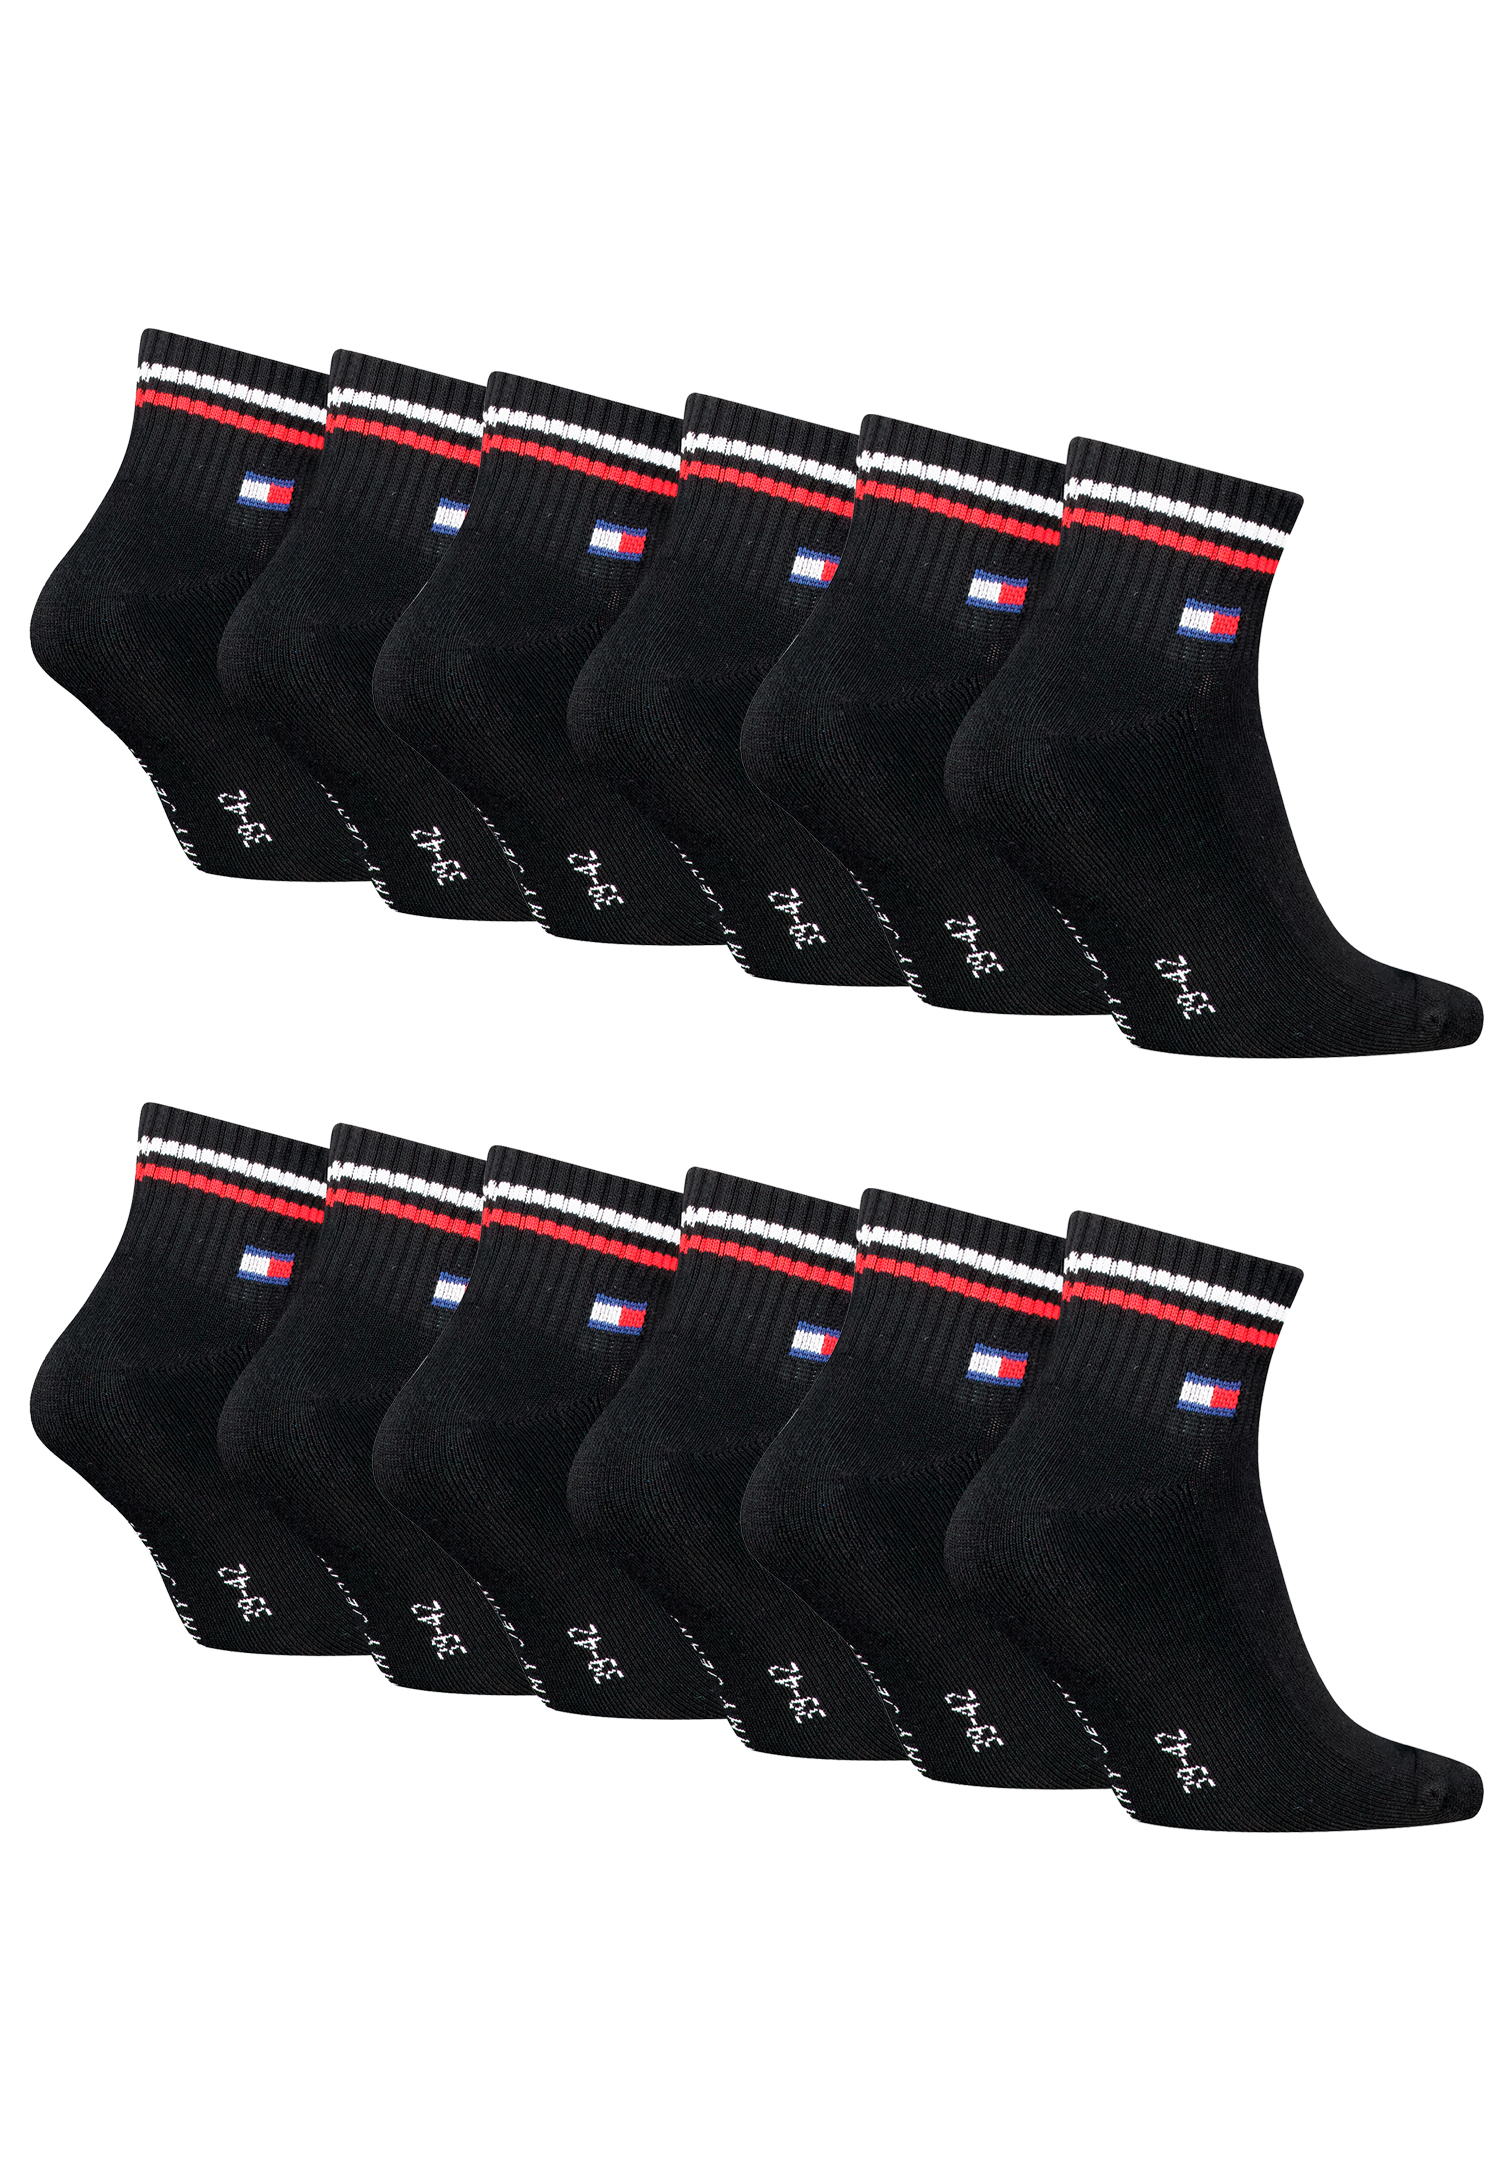 Tommy Hilfiger Unisex Quarter Socken im Retro Design knöchelhoch 12-er Pack